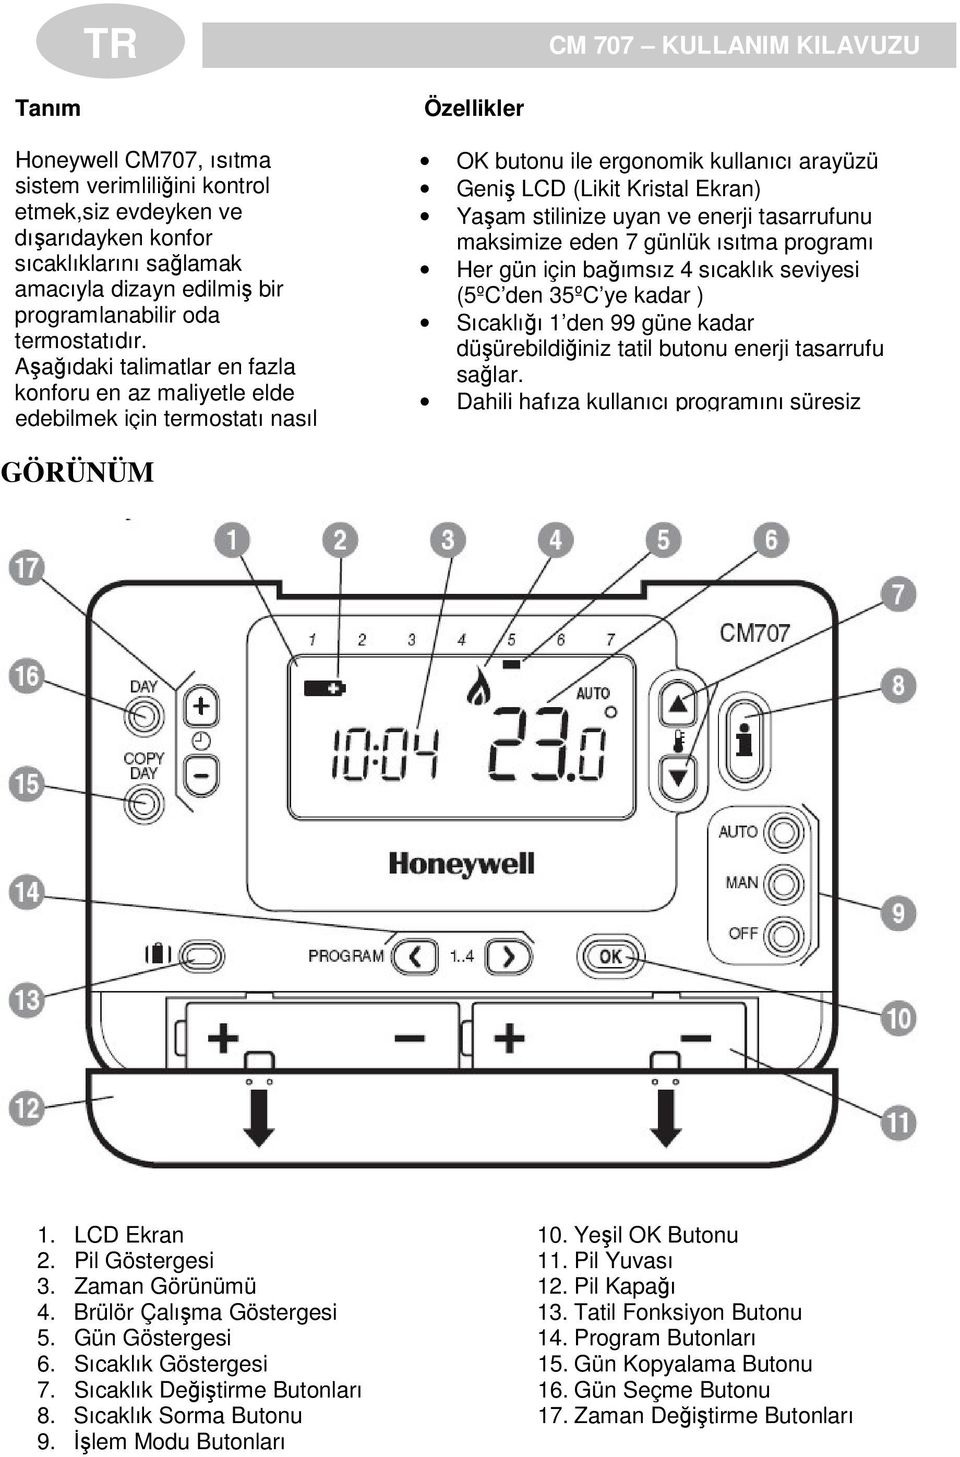 Aaıdaki talimatlar en fazla konforu en az maliyetle elde edebilmek için termostatı nasıl Özellikler OK butonu ile ergonomik kullanıcı arayüzü Geni LCD (Likit Kristal Ekran) Yaam stilinize uyan ve